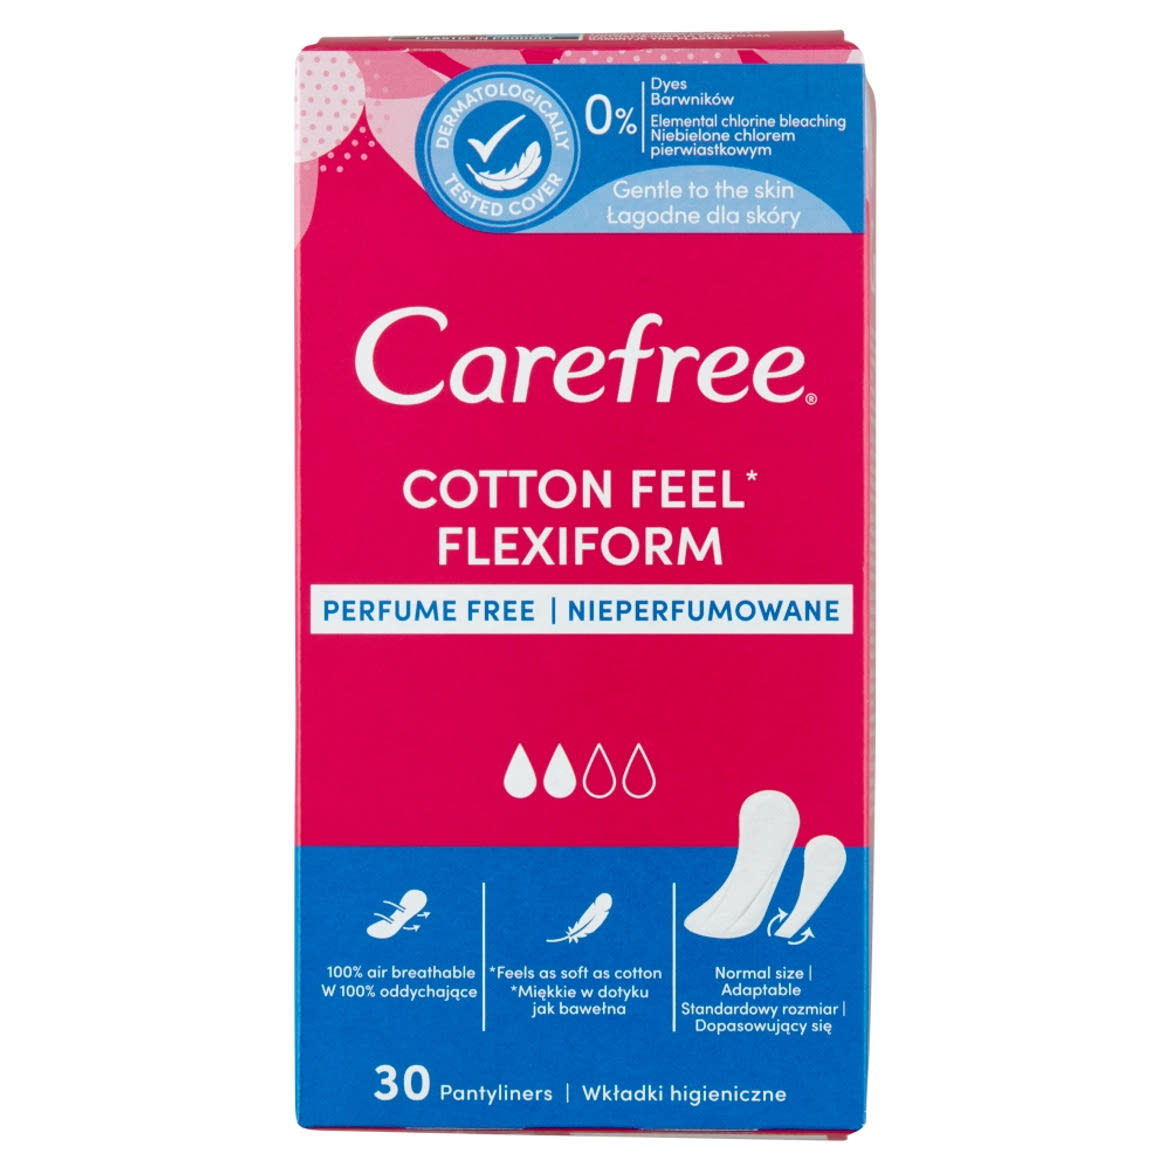 Carefree Cotton Feel Flexiform tisztasági betét